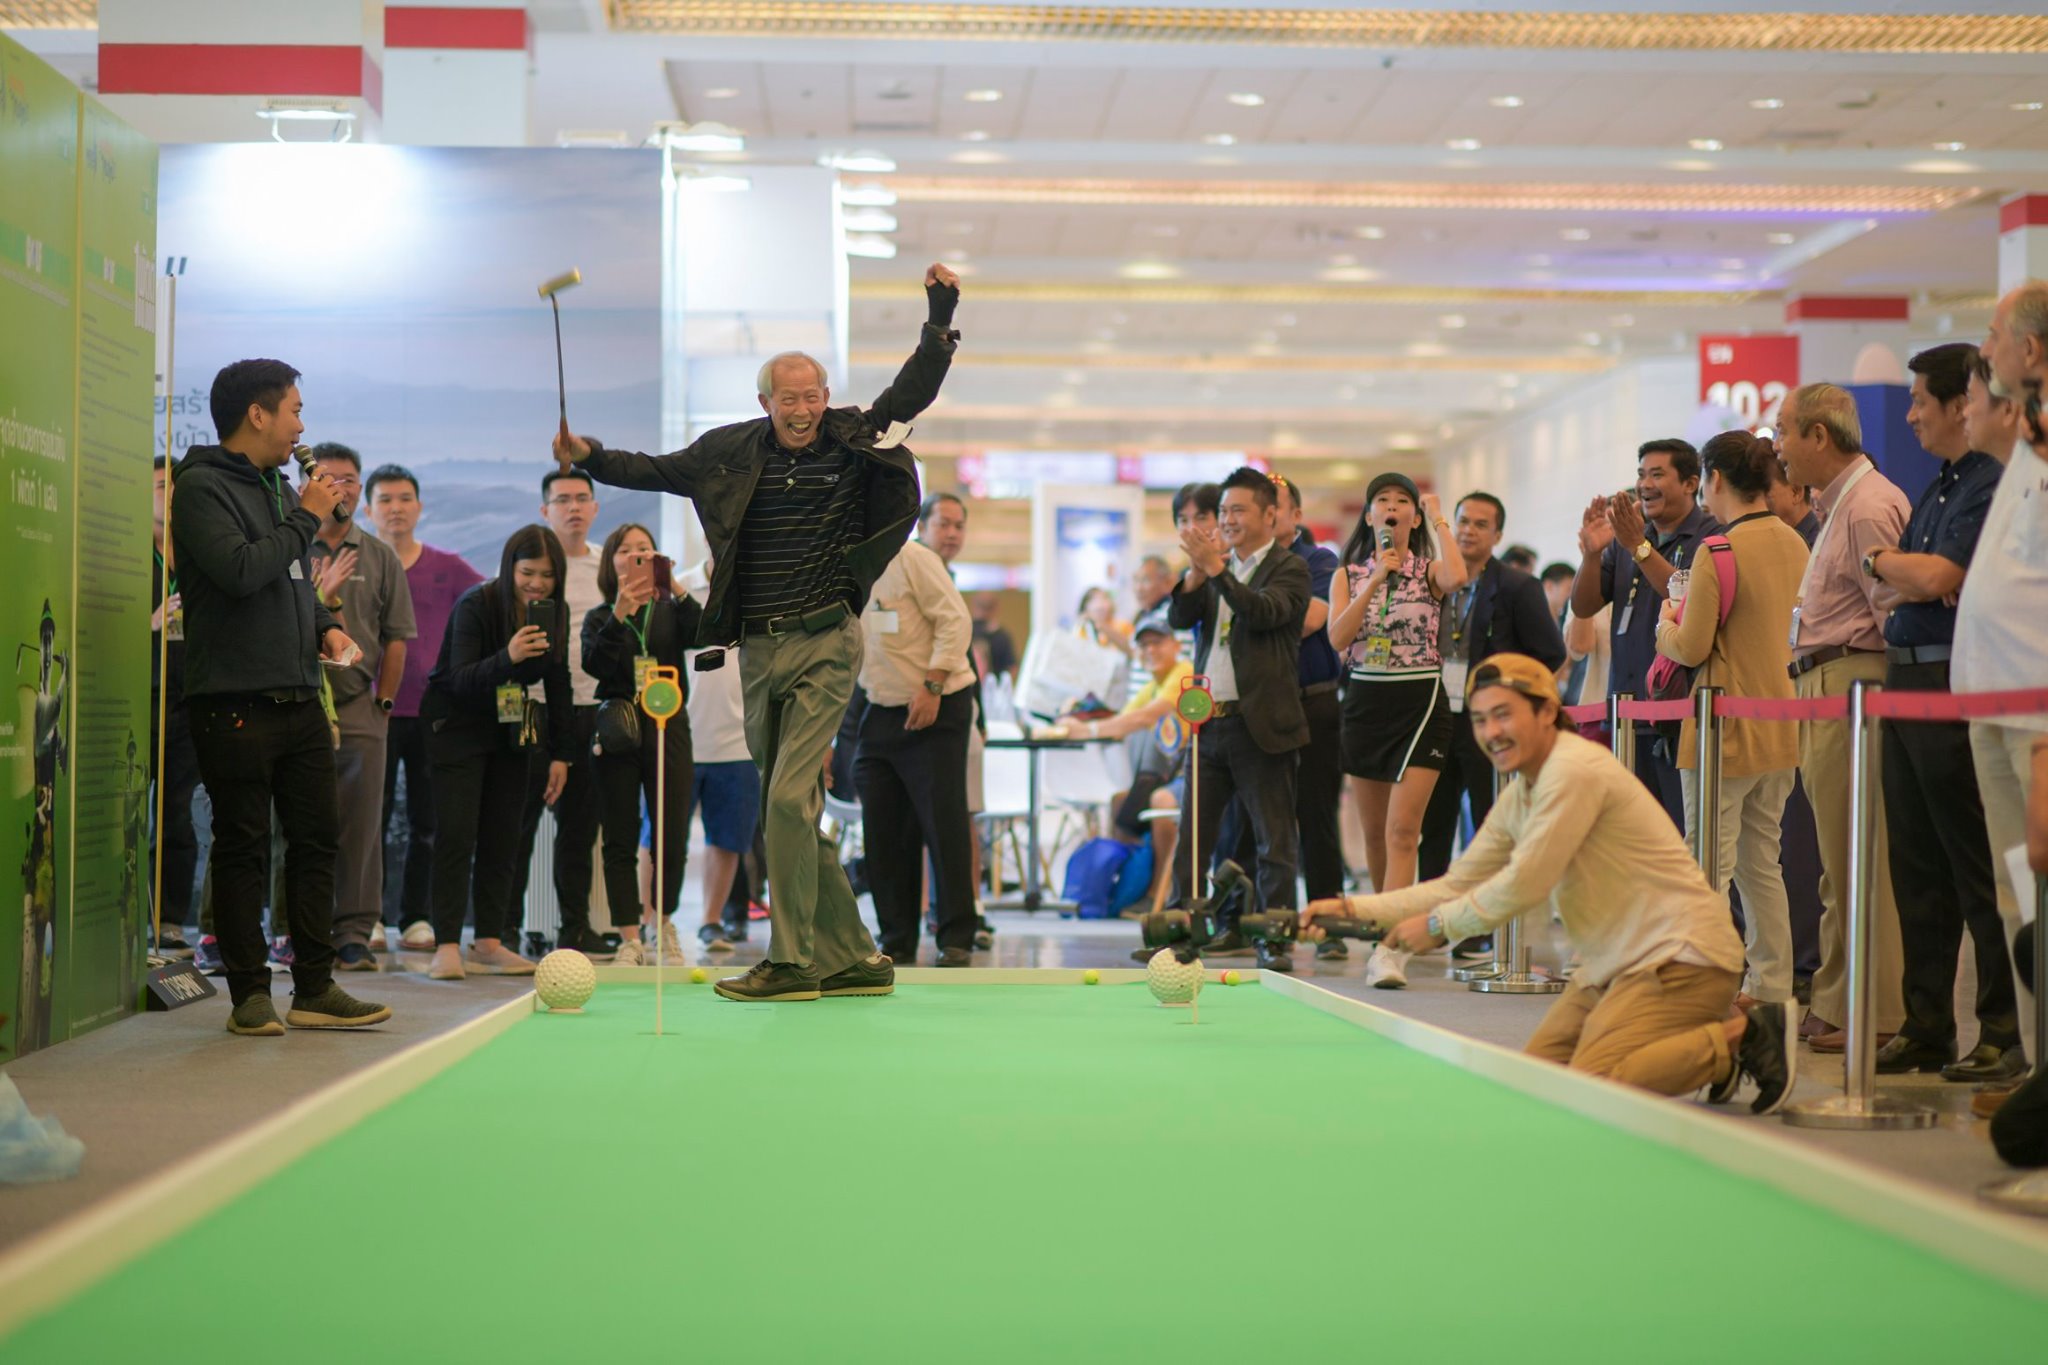 ชวนนักกอล์ฟ แข่ง 1 พัตต์ ลุ้นรับเงิน 1 แสน ในงาน Thailand Golf Expo 2020